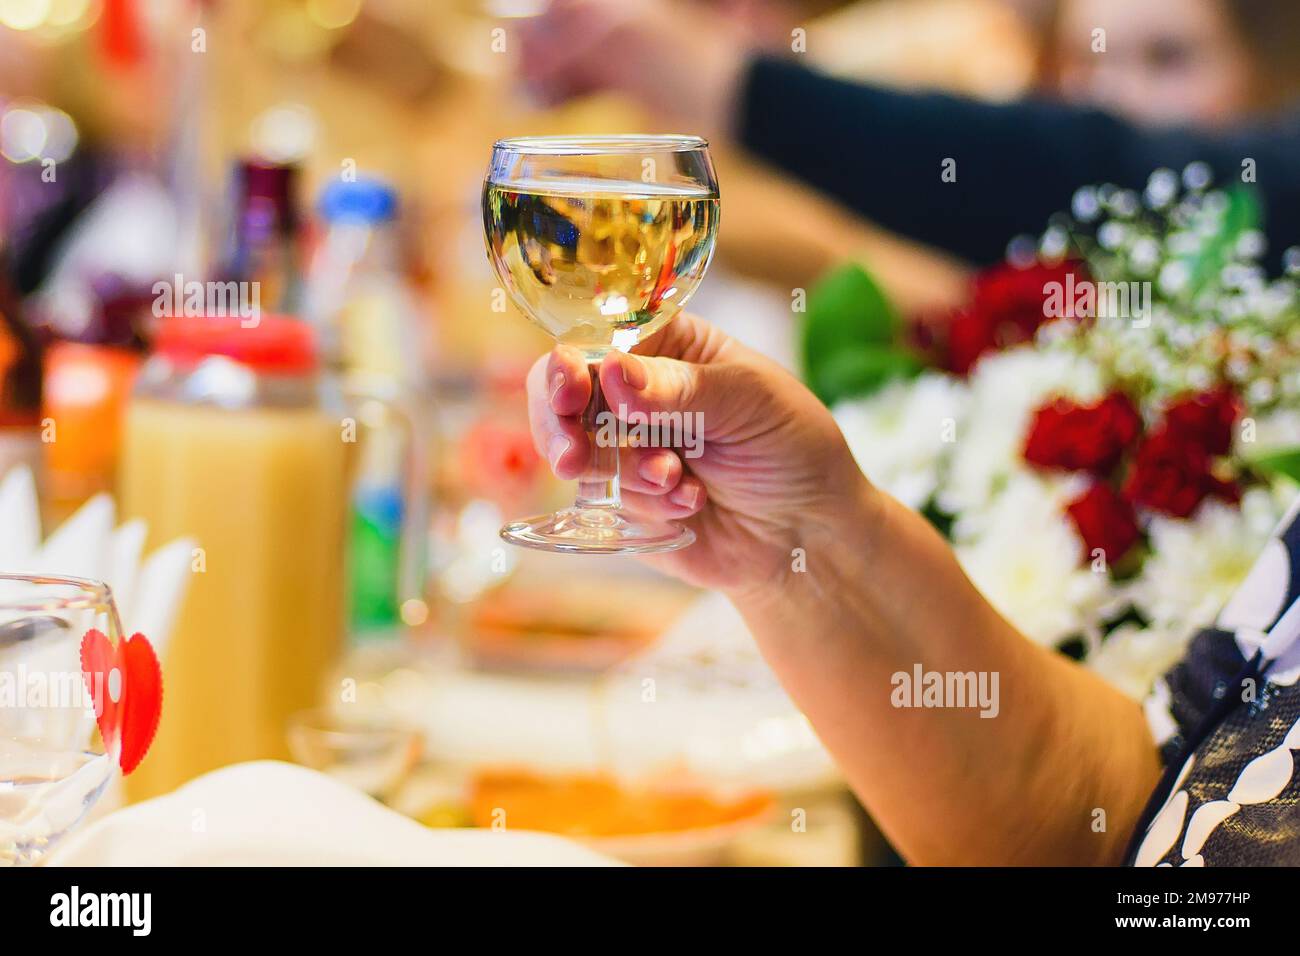 mains d'une femme avec un verre de vin blanc en gros plan Banque D'Images